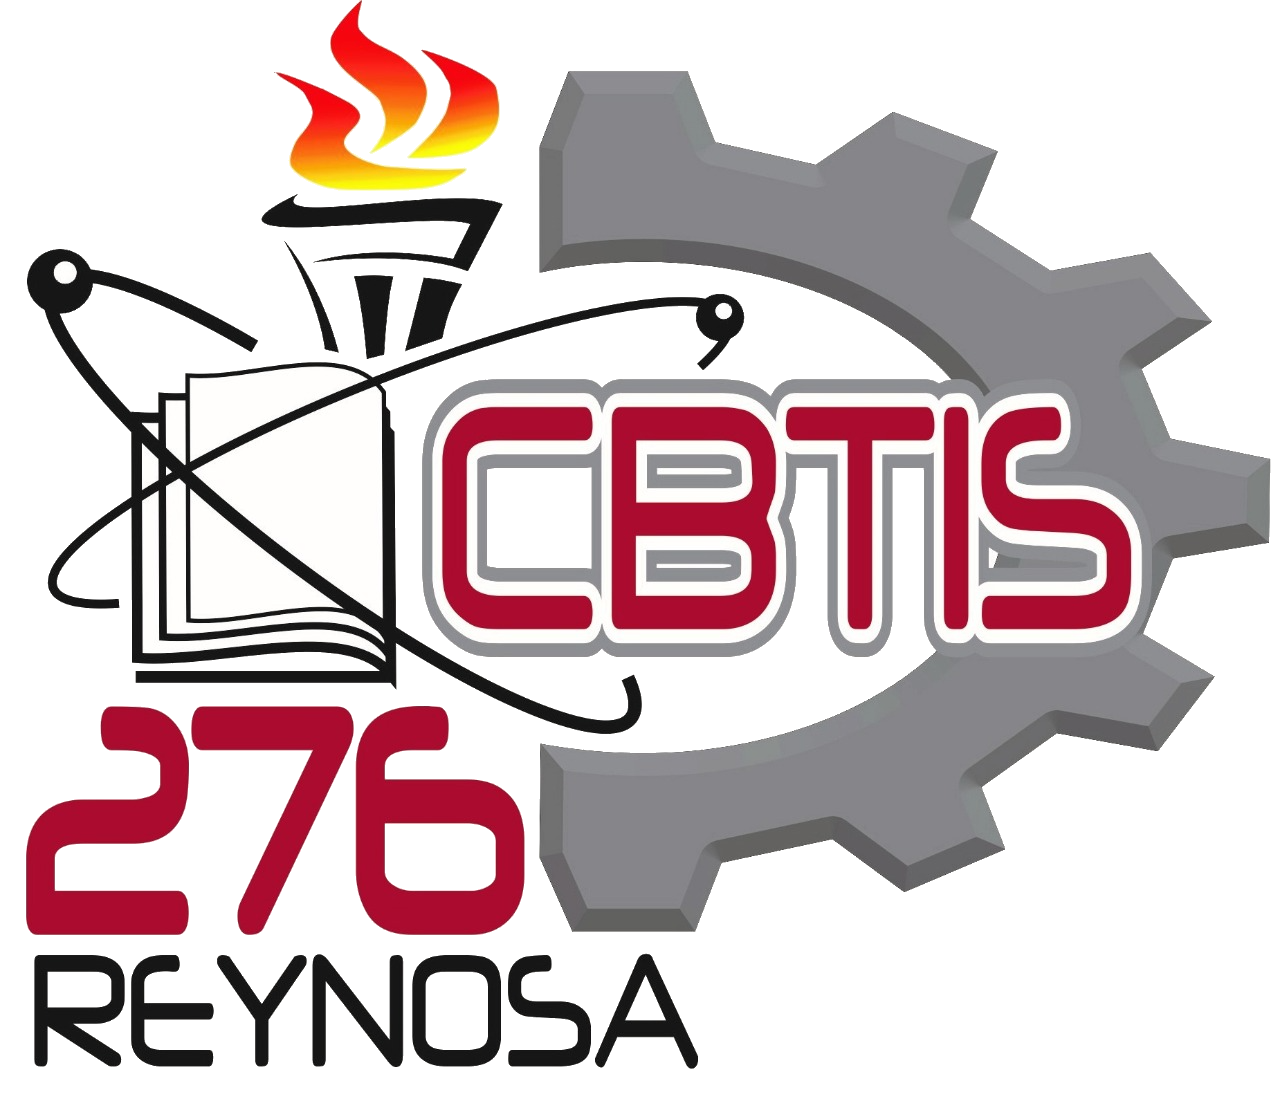 CBTis 276